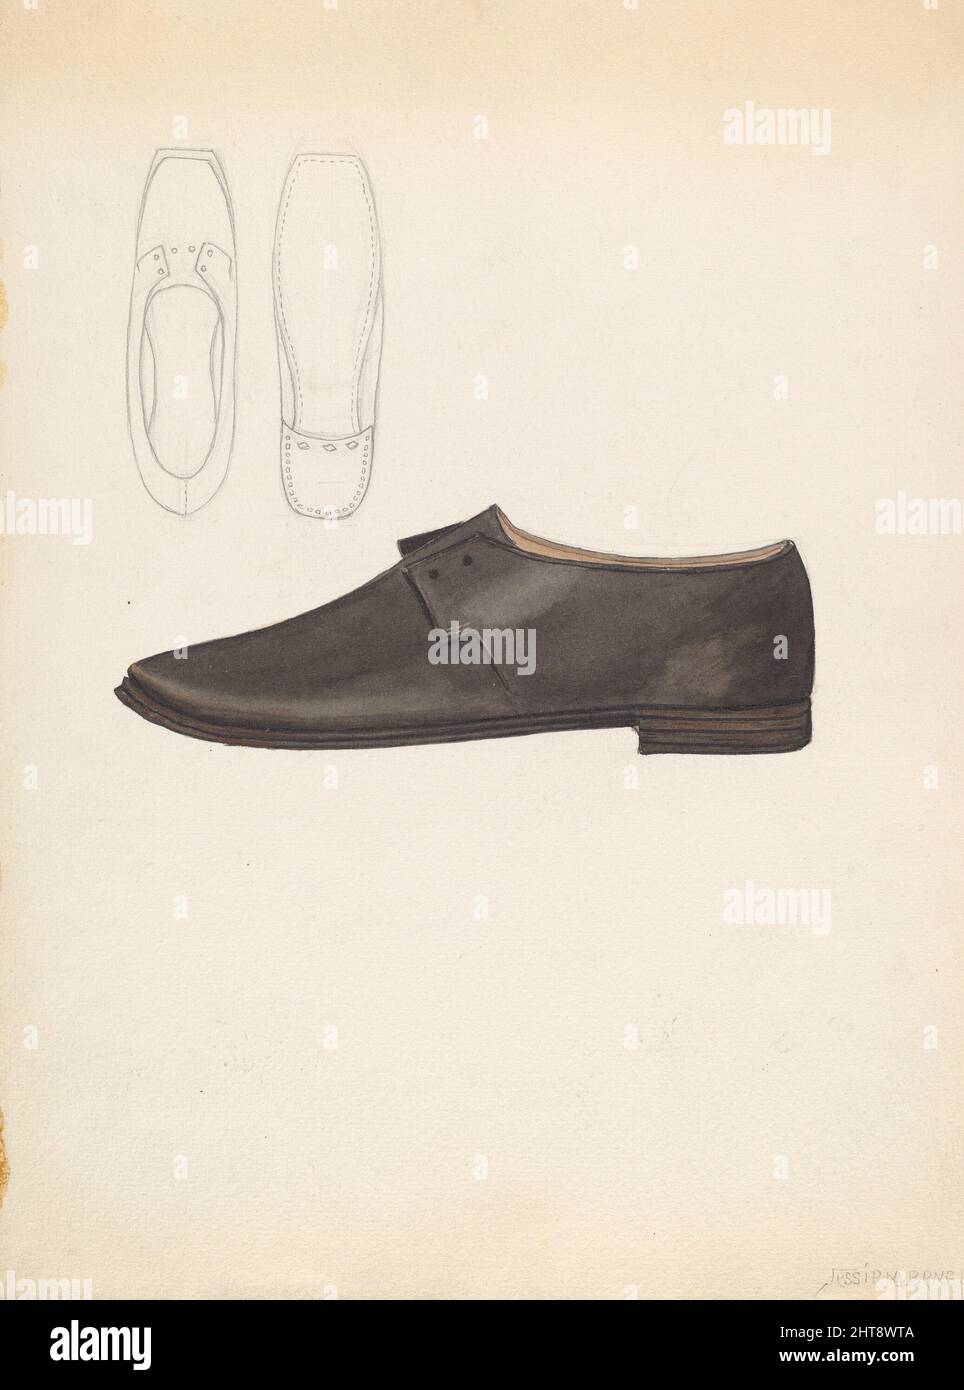 Man's Shoe, c. 1936. Stock Photo